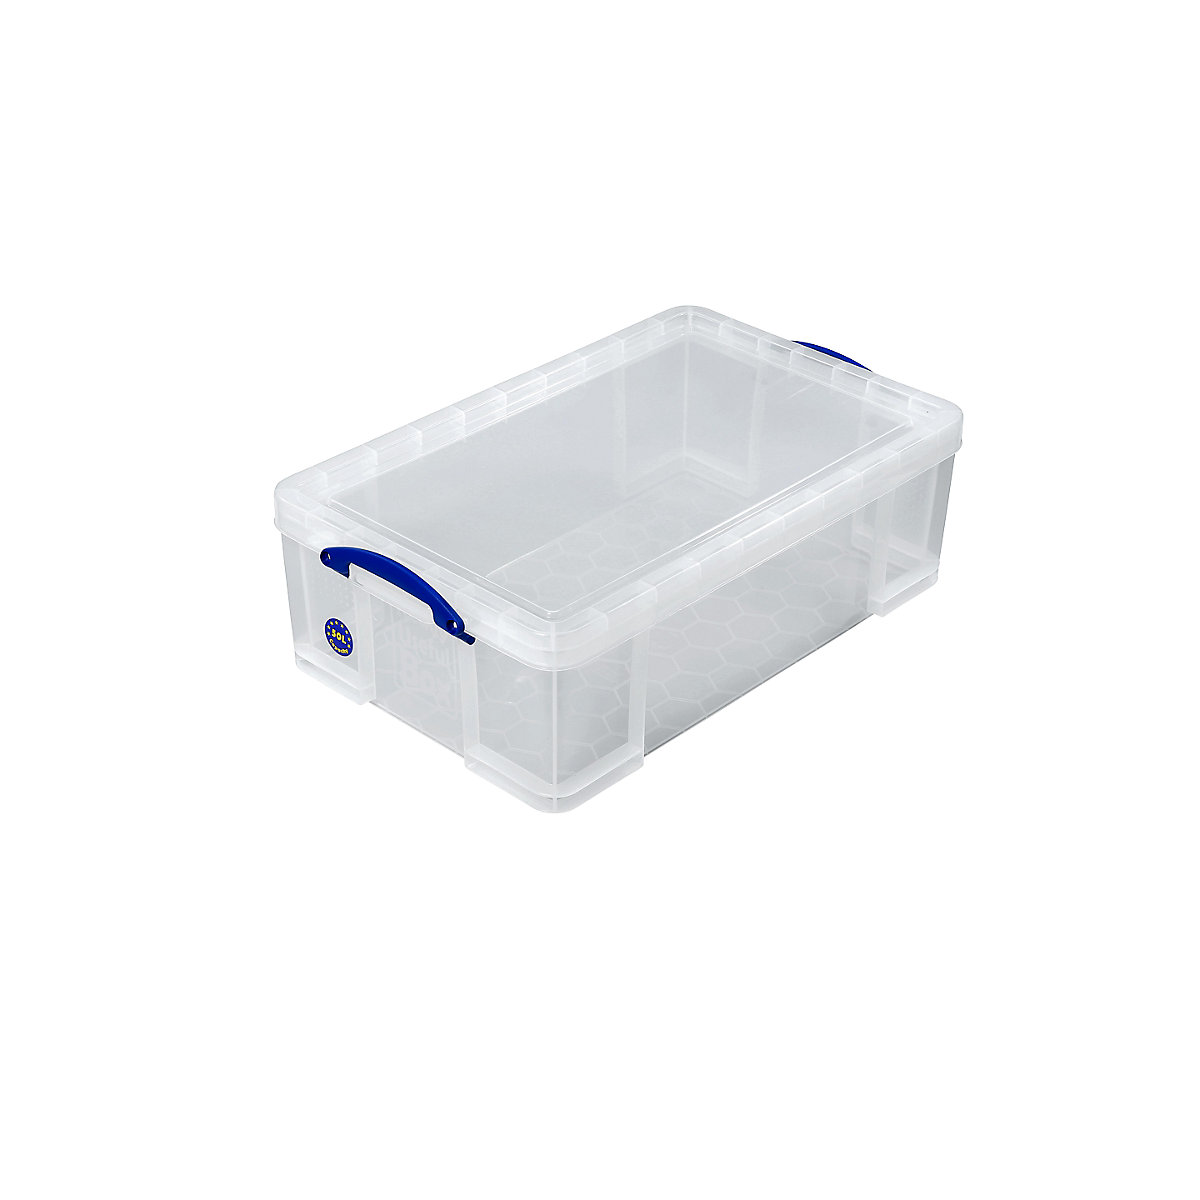 Stohovací box REALLY USEFUL, s víkem, objem 50 l, d x š x v 710 x 440 x 230 mm-16